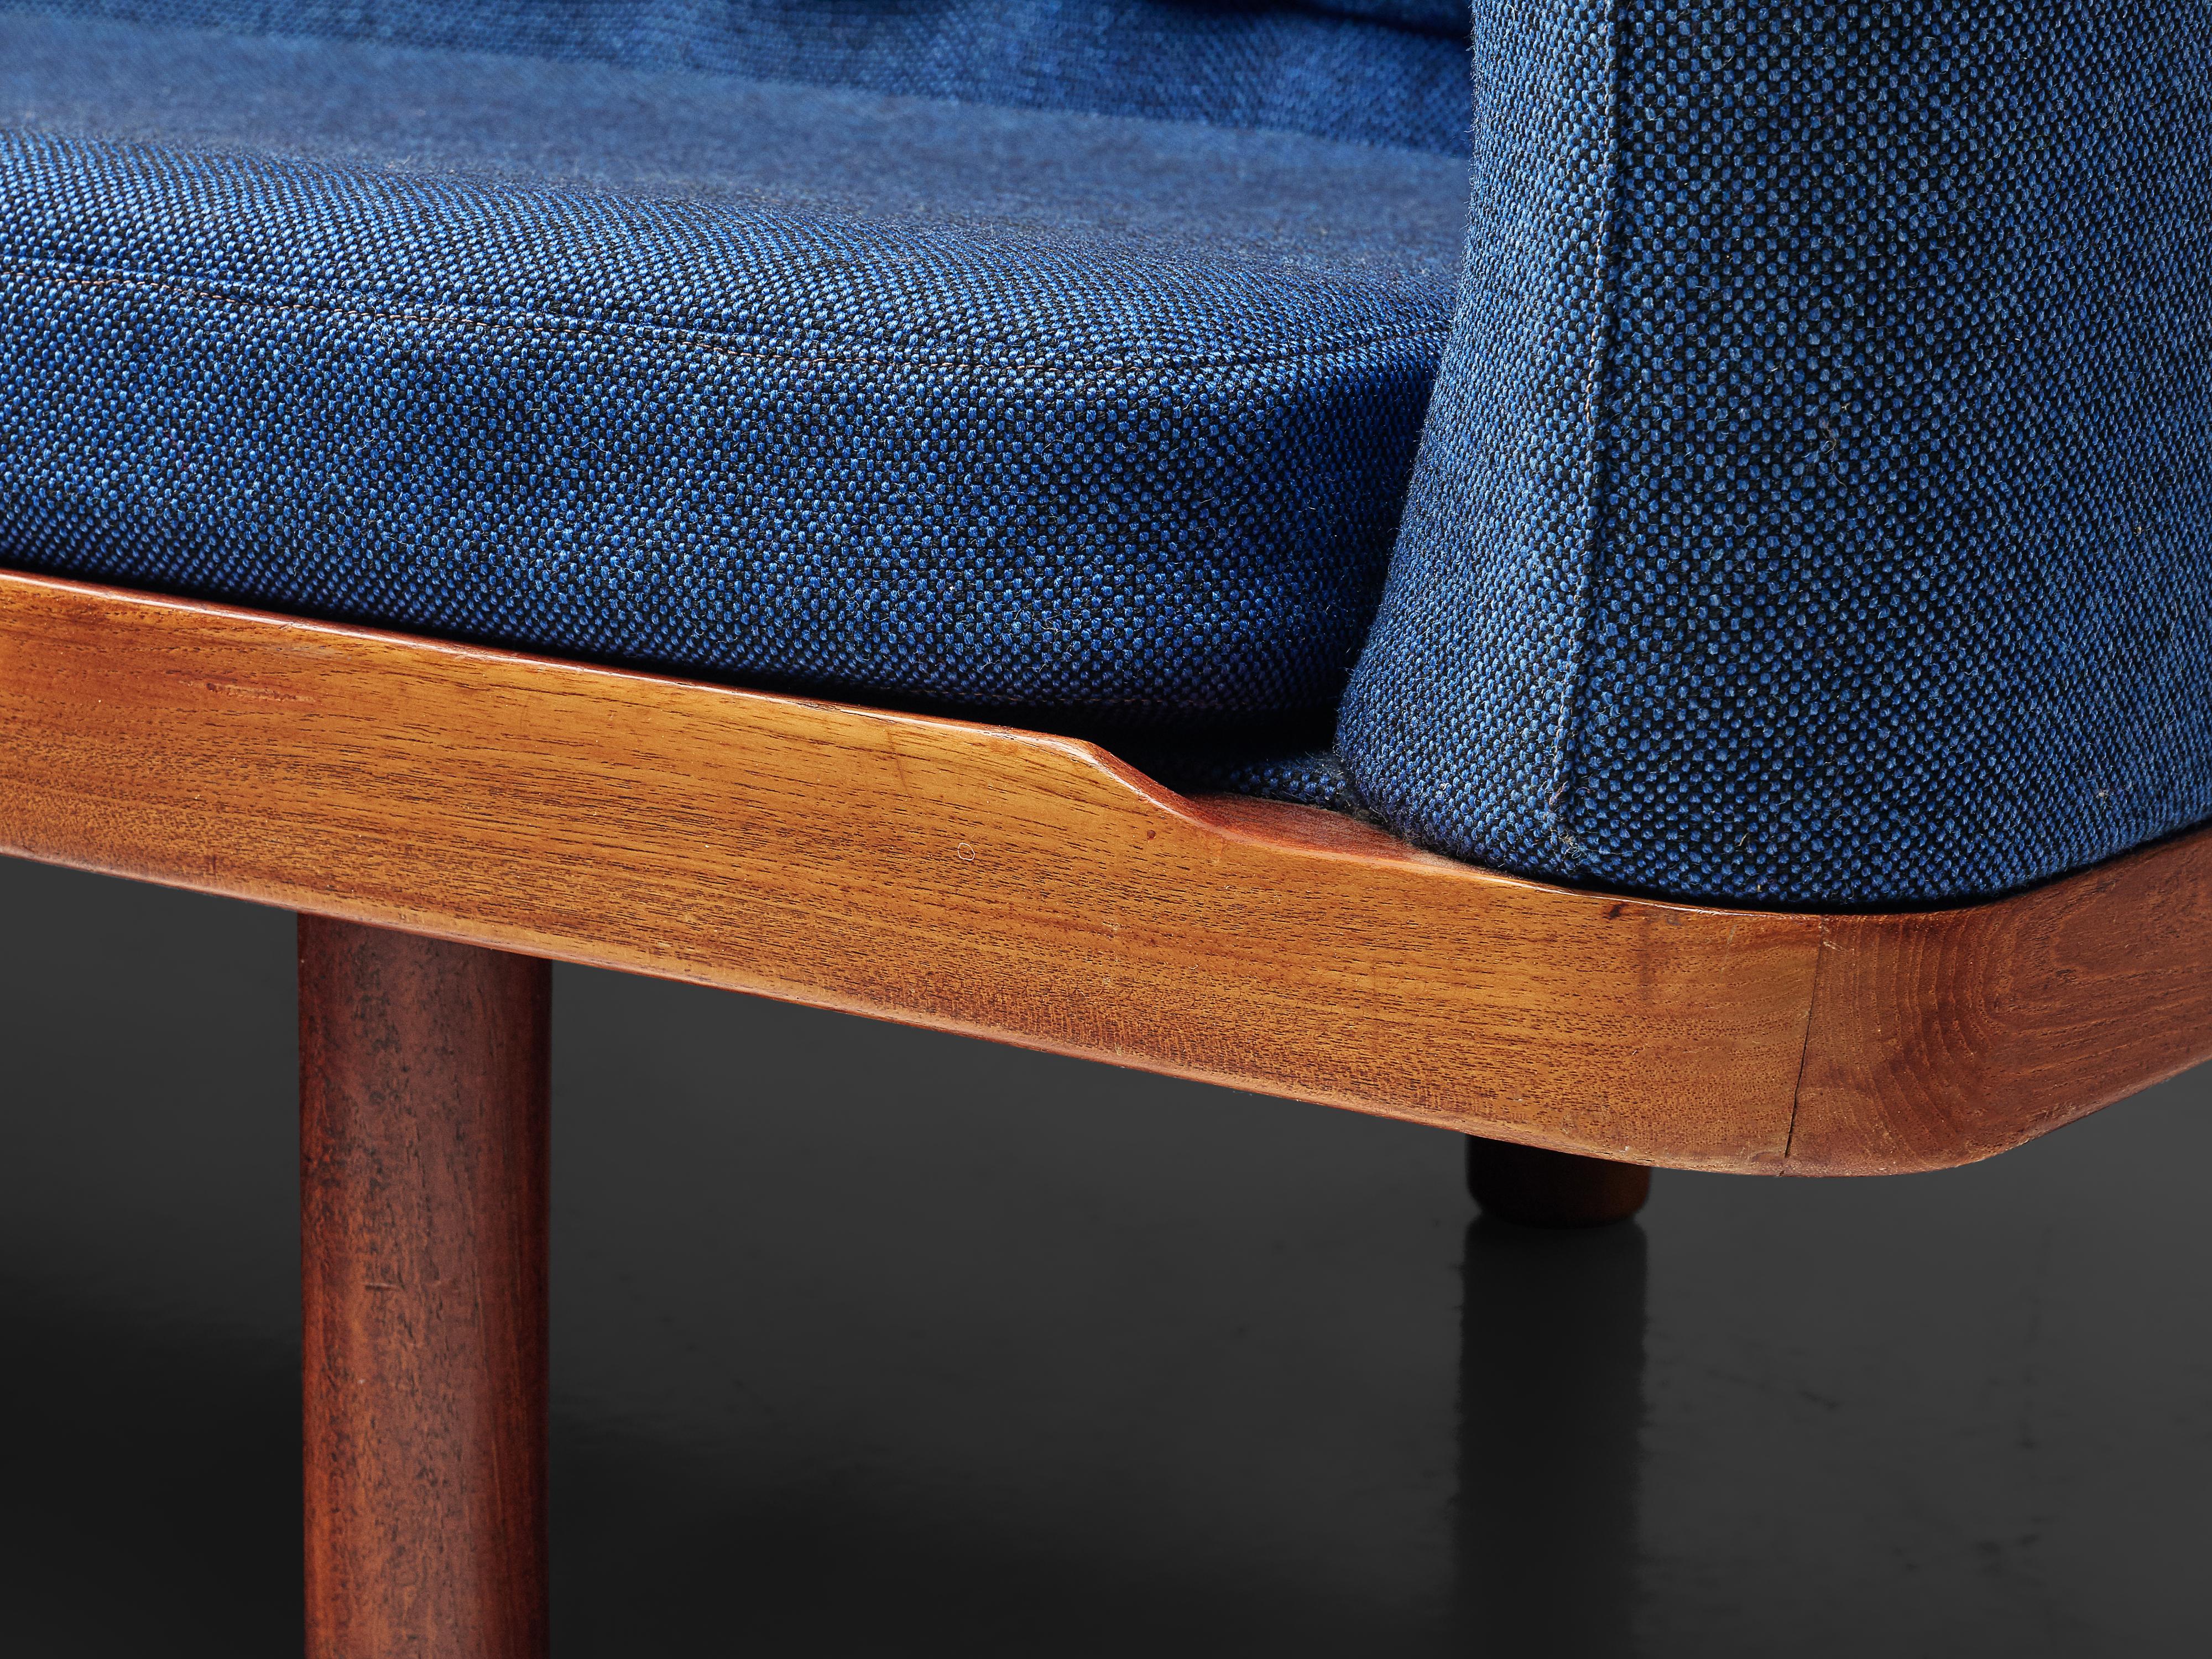 20th Century Arne Halvorsen Sofa Model 2010 in Teak and Blue Fabric Upholstery